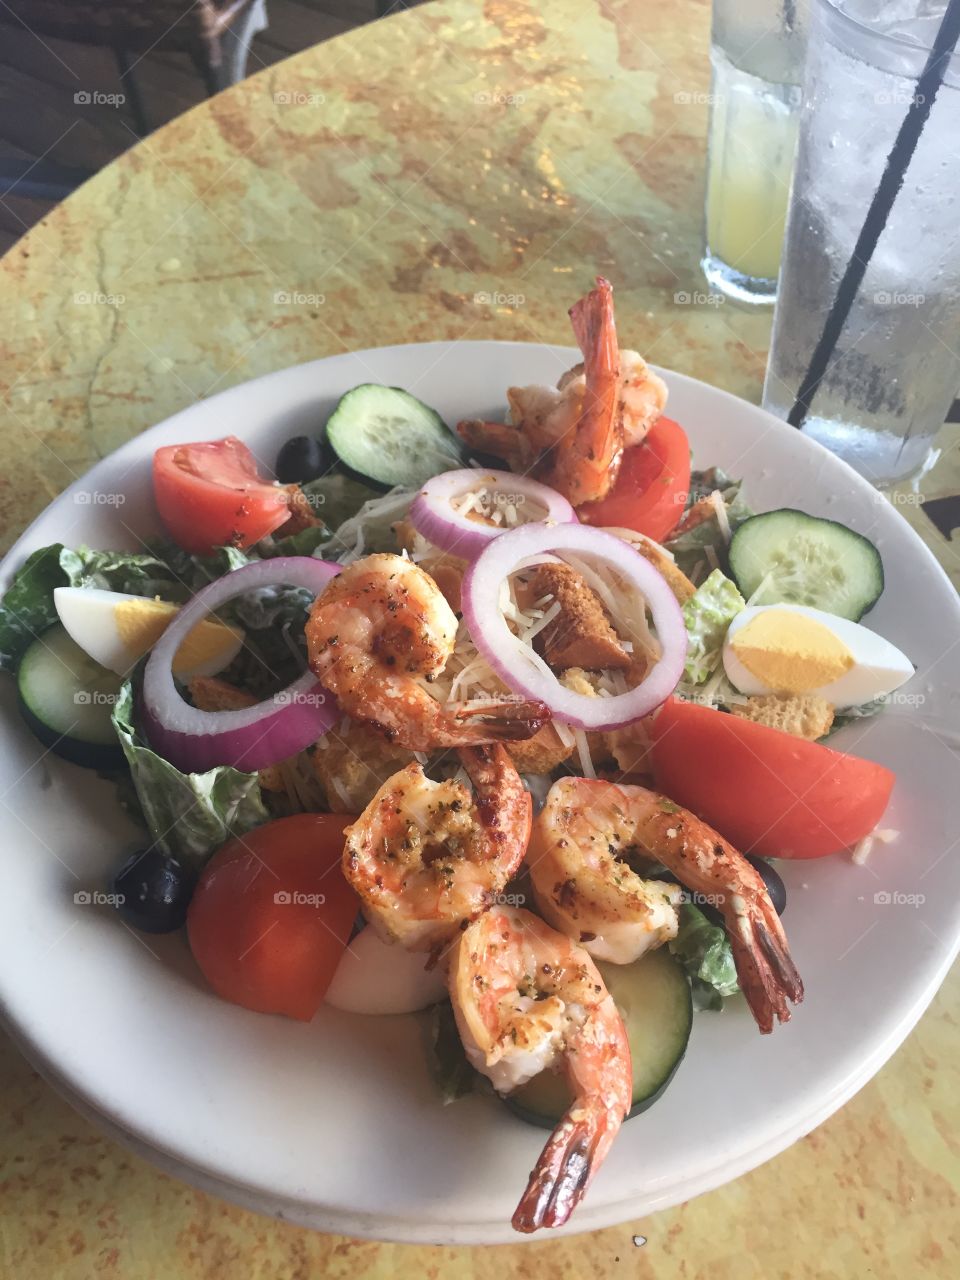 Shrimp Caesar salad delight 